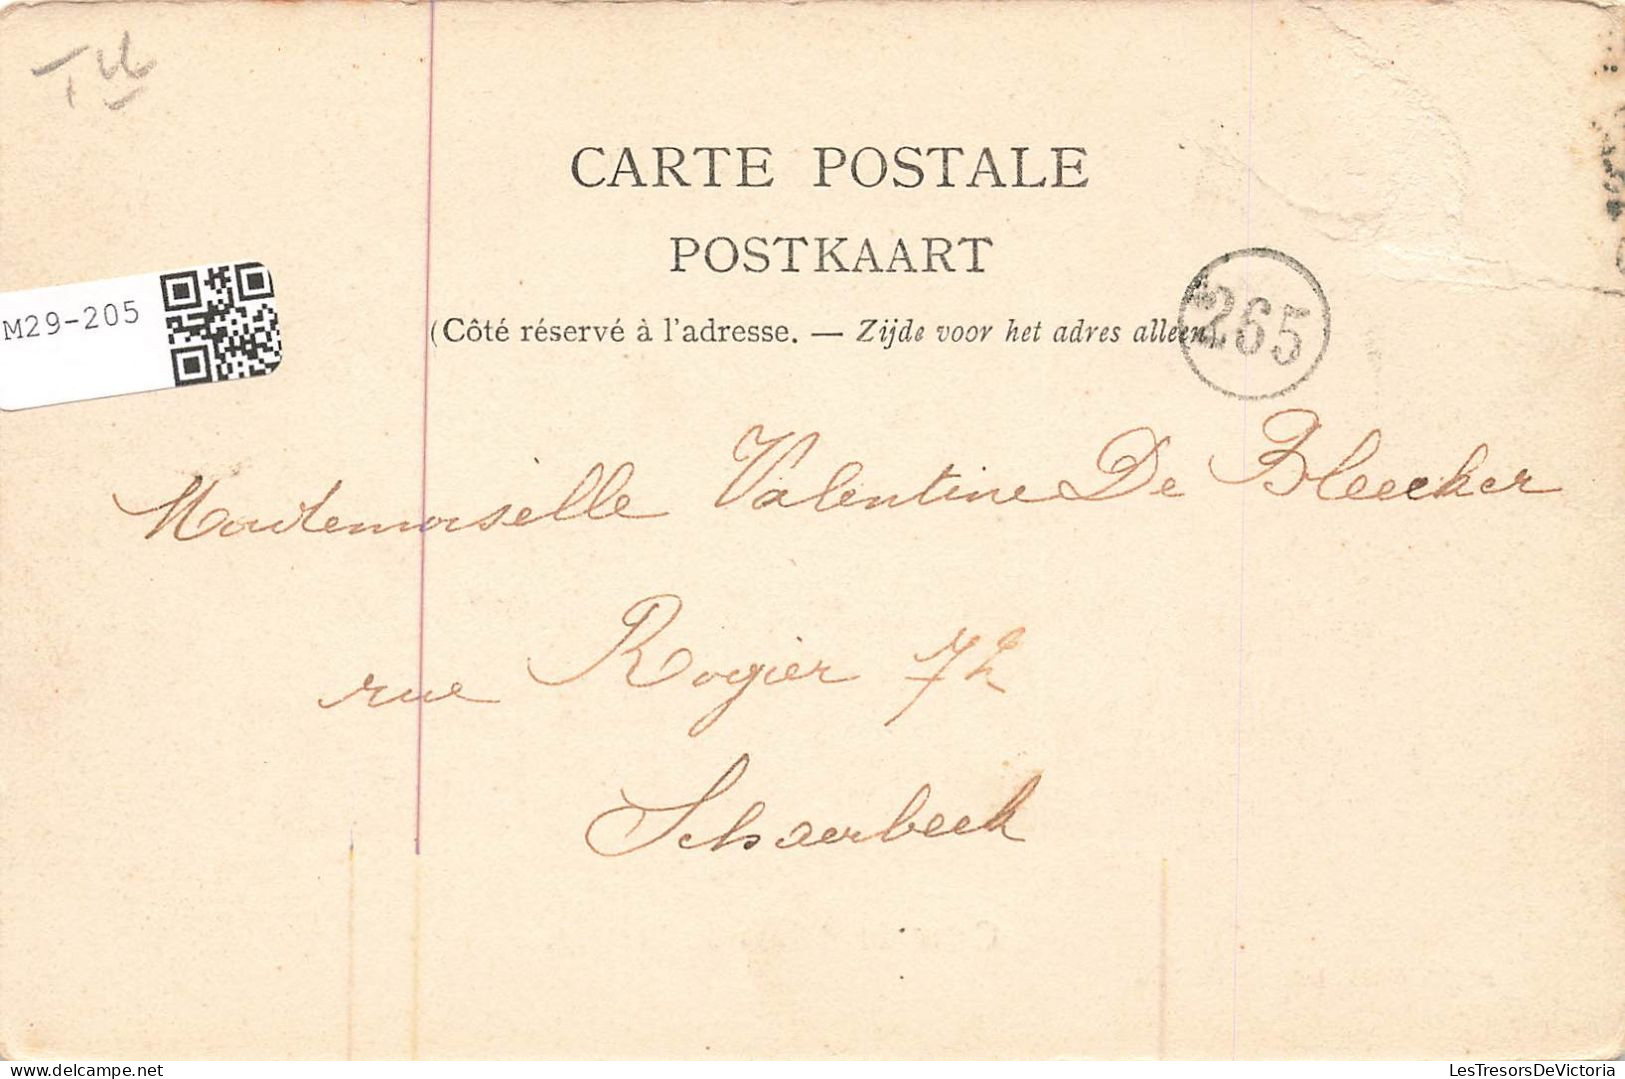 BELGIQUE - Liège - Cour Du Palais De Justice - Domestiques - Dos Non Divisé - Carte Postale Ancienne - Liege